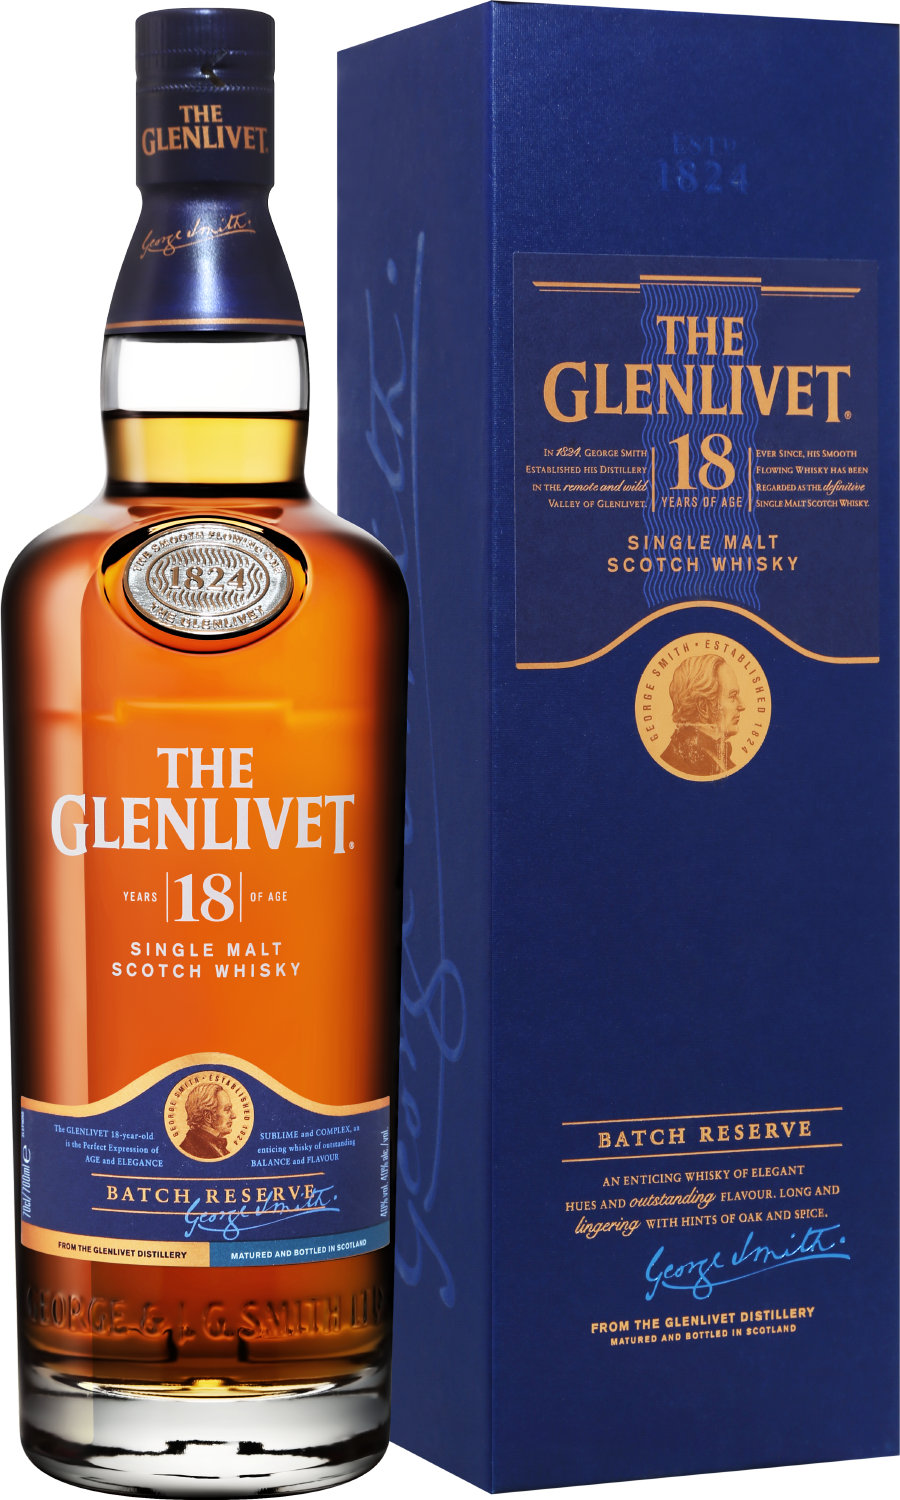 The Glenlivet Single Malt Scotch Whisky 18 y.o. (gift box) the glenlivet founder s reserve single malt scotch whisky gift box with 2 glasses